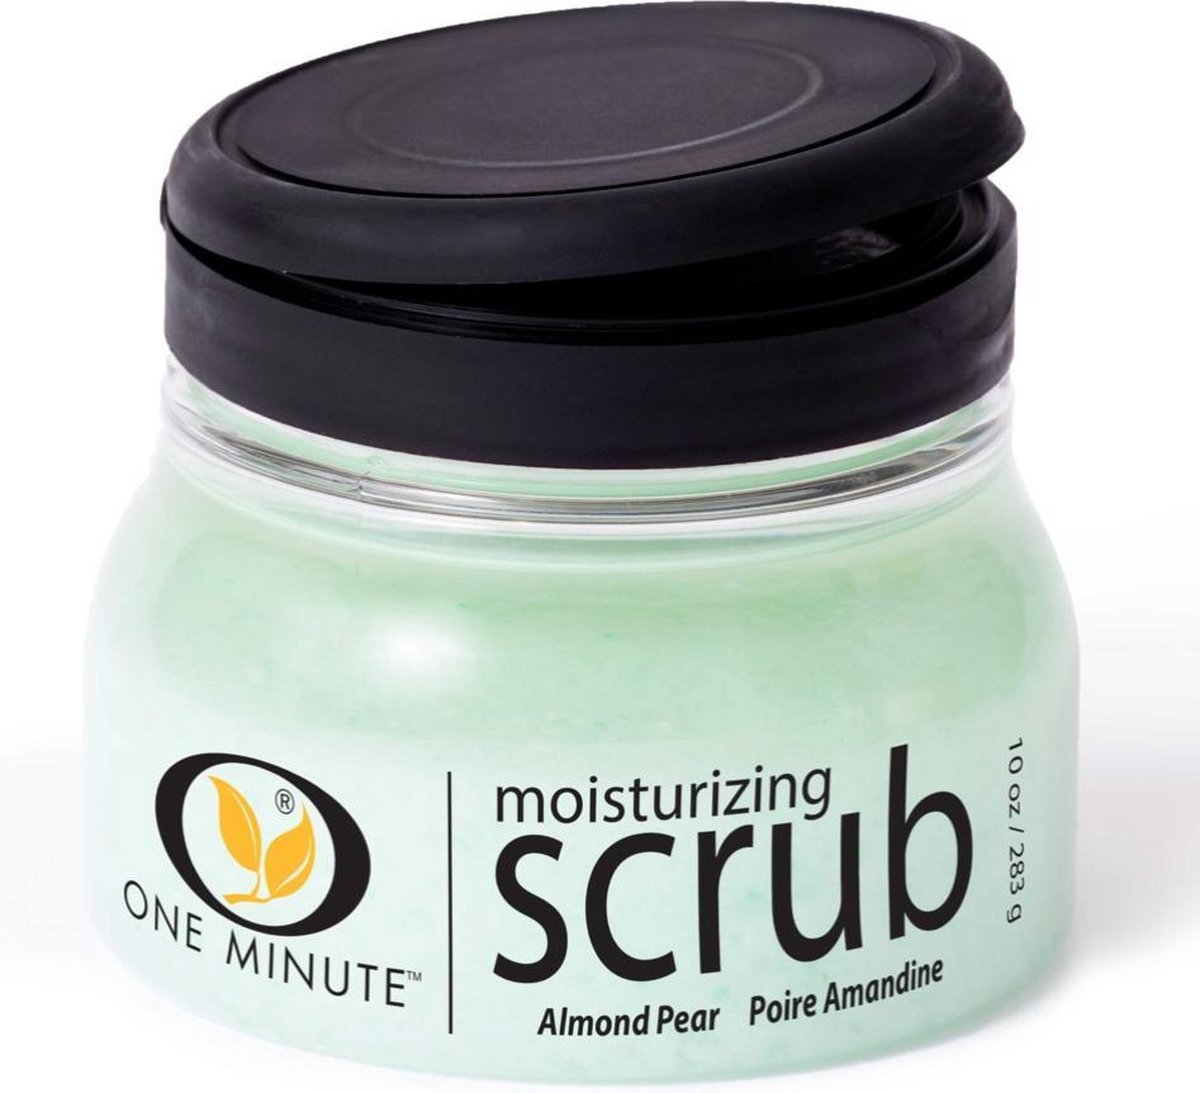 One minute manicure scrub Almond Pear 283 gram